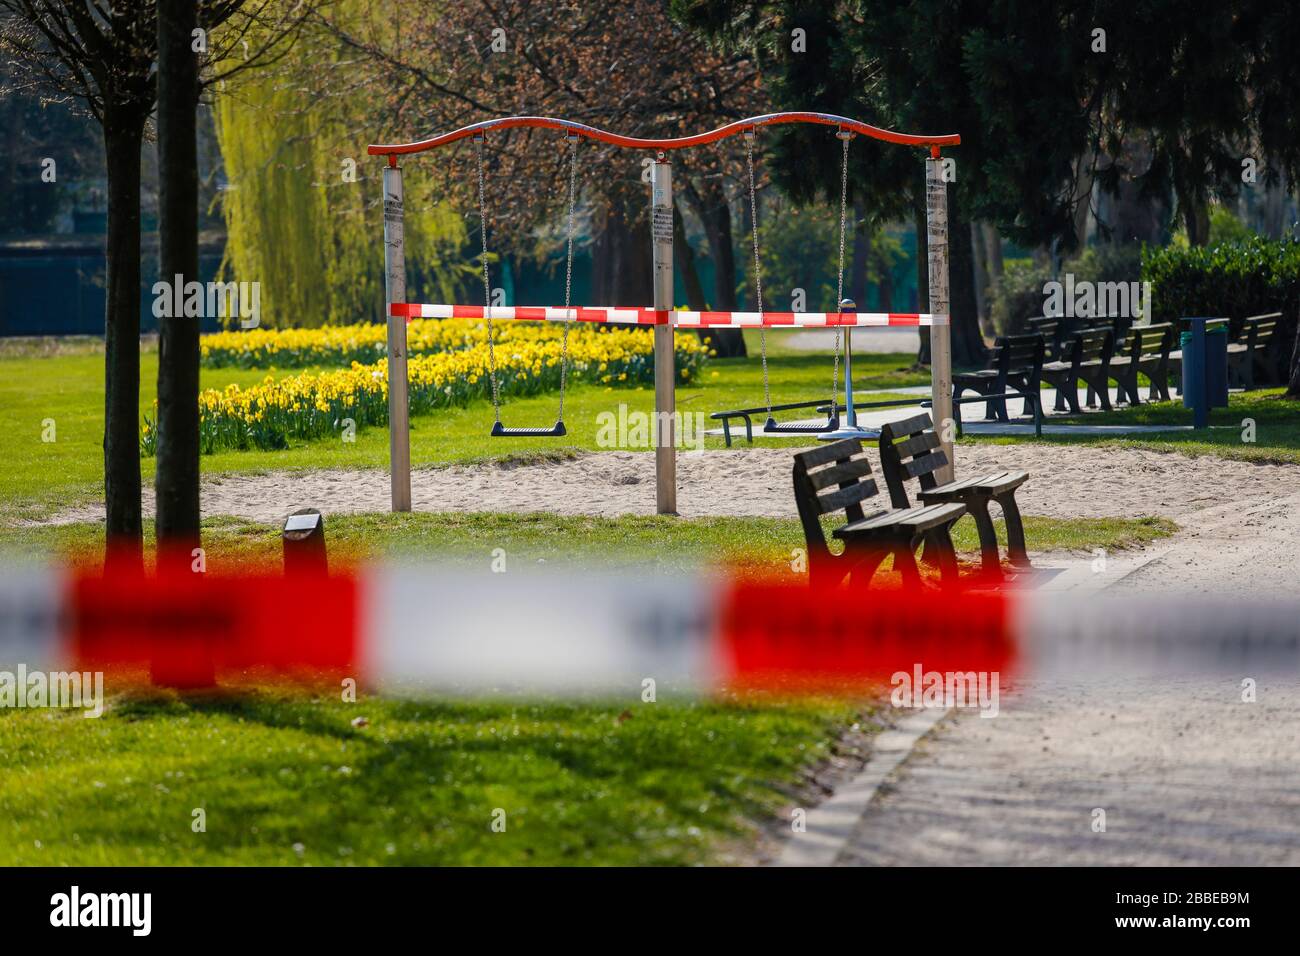 Essen, Ruhrgebiet, Nordrhein-Westfalen, Deutschland - Kontaktverbot wegen Corona-Pandemie wurde der Park am Haumannplatz wegen zu vieler Bürger gesperrt Stockfoto